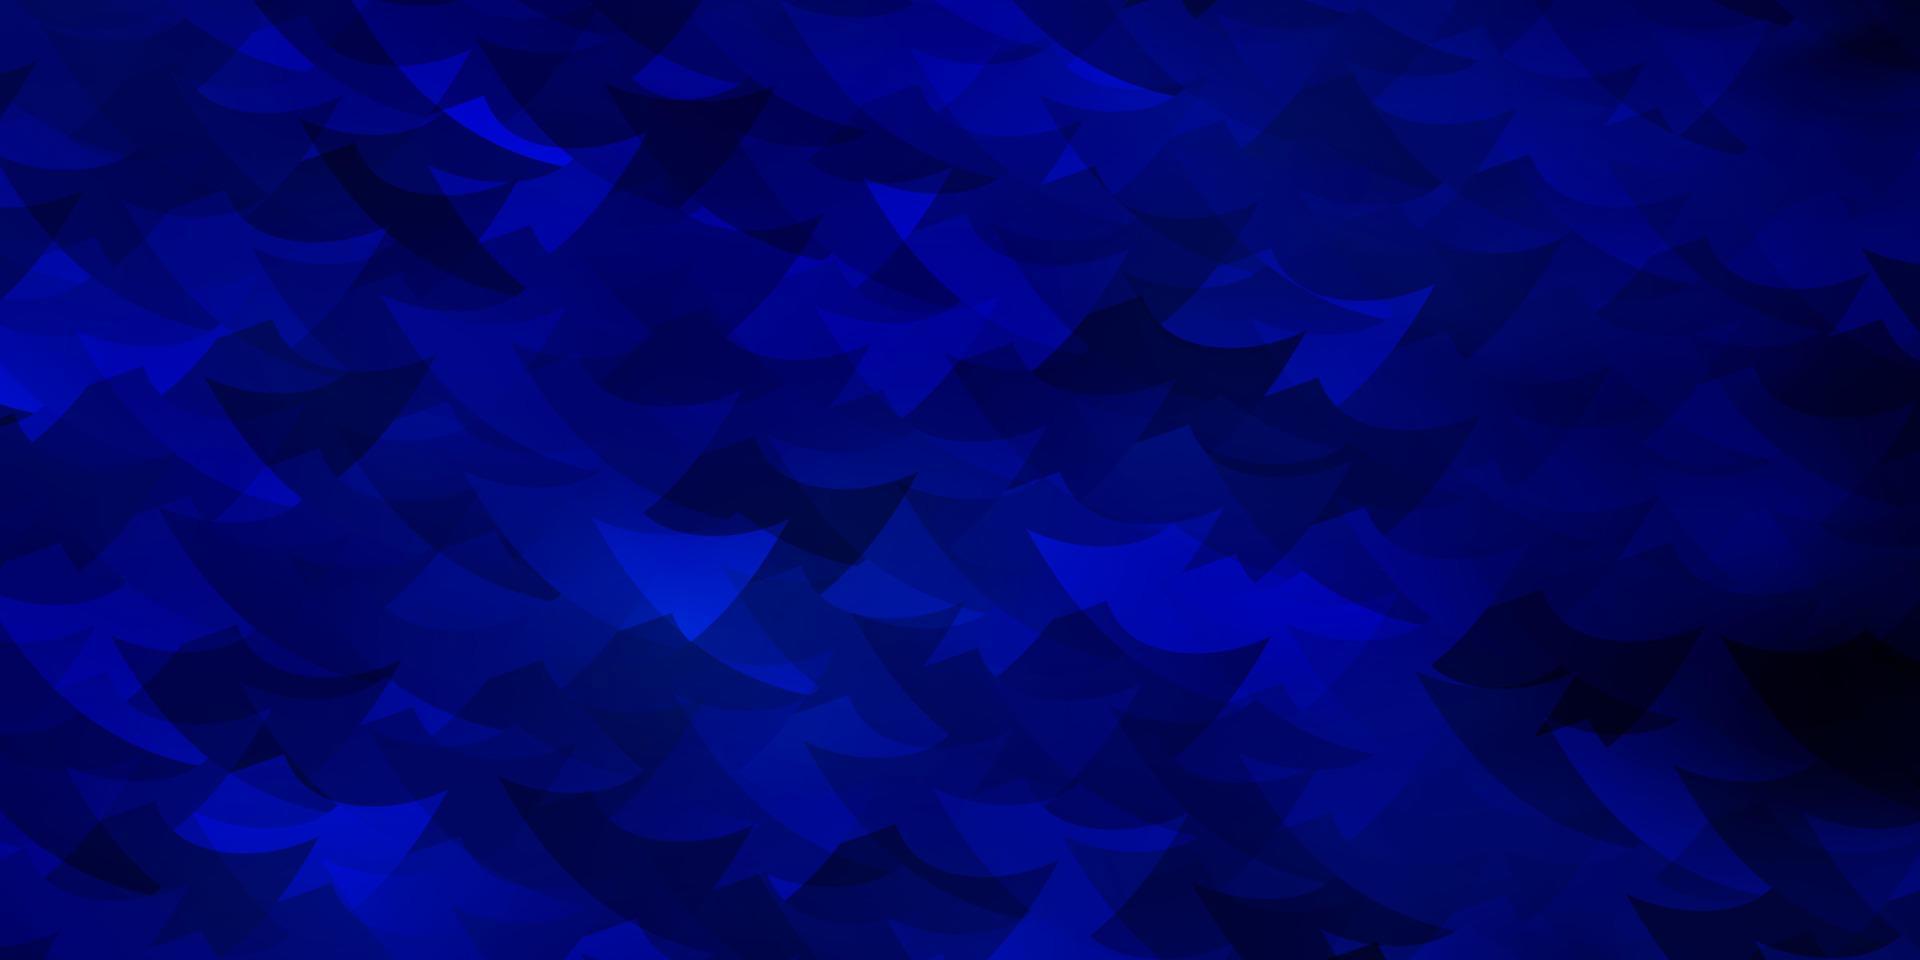 Telón de fondo de vector azul oscuro con líneas, rombos.